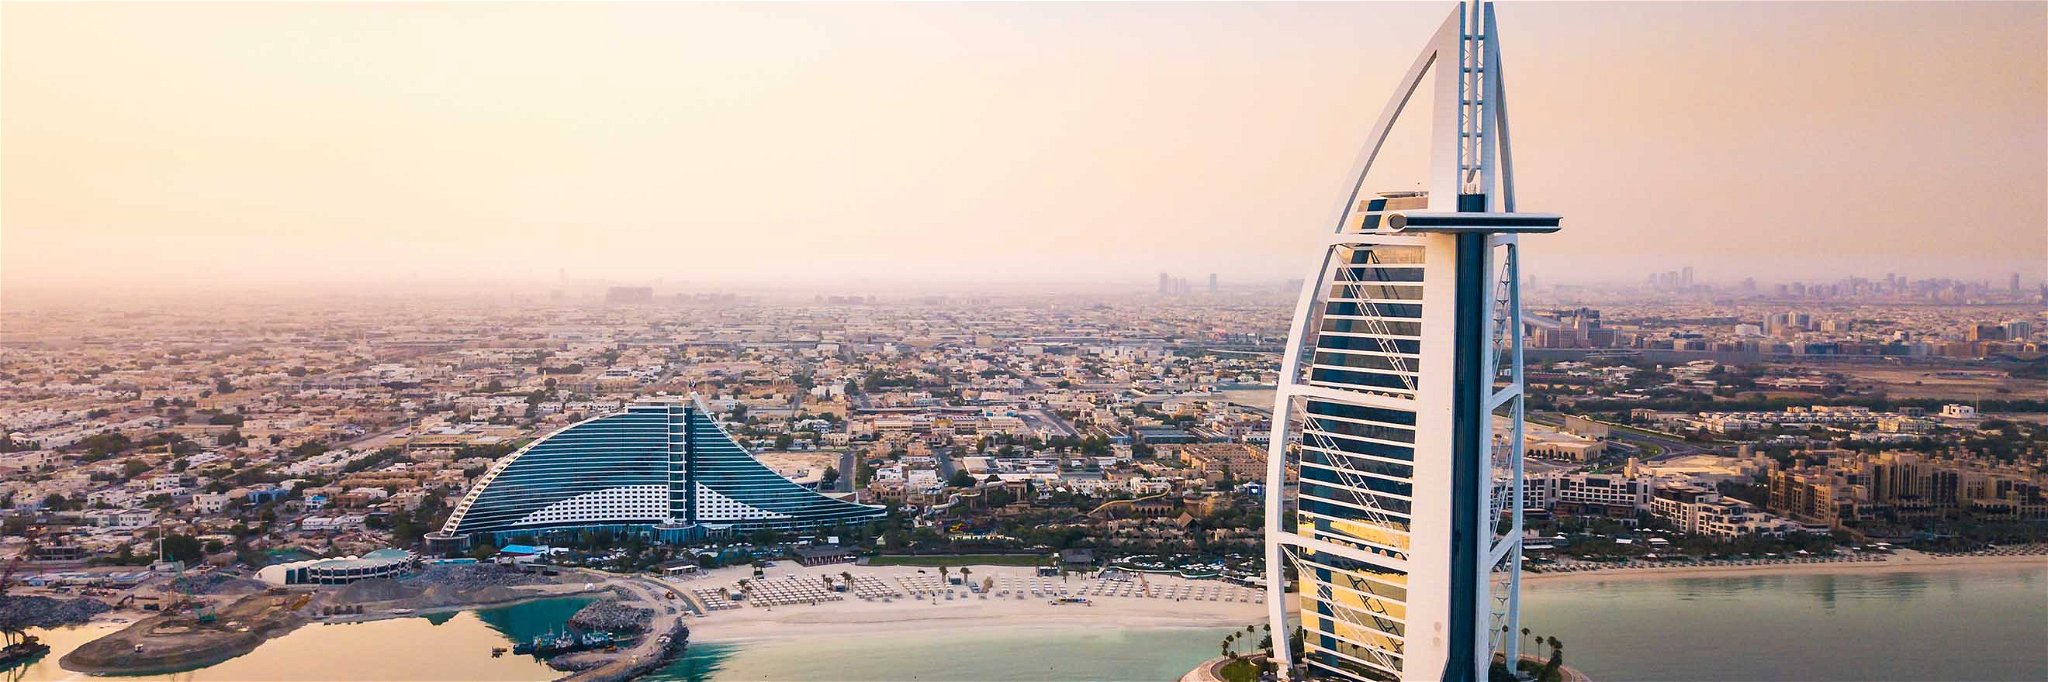 Rund 16 Millionen Touristen empfängt Dubai jedes Jahr.